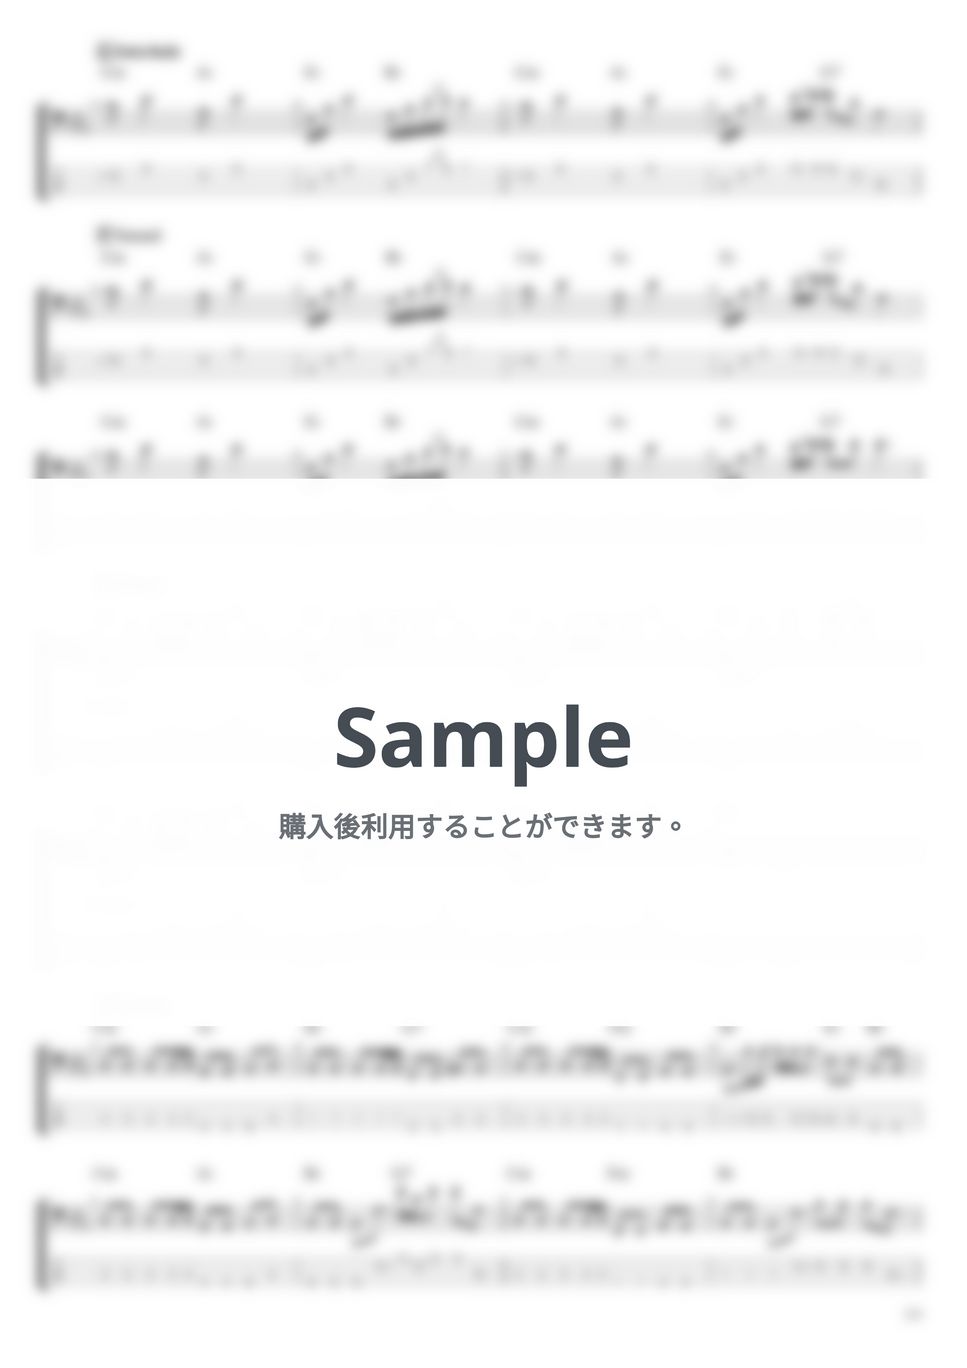 天野月子 - 箱庭 (ベース Tab譜 4弦) by T's bass score